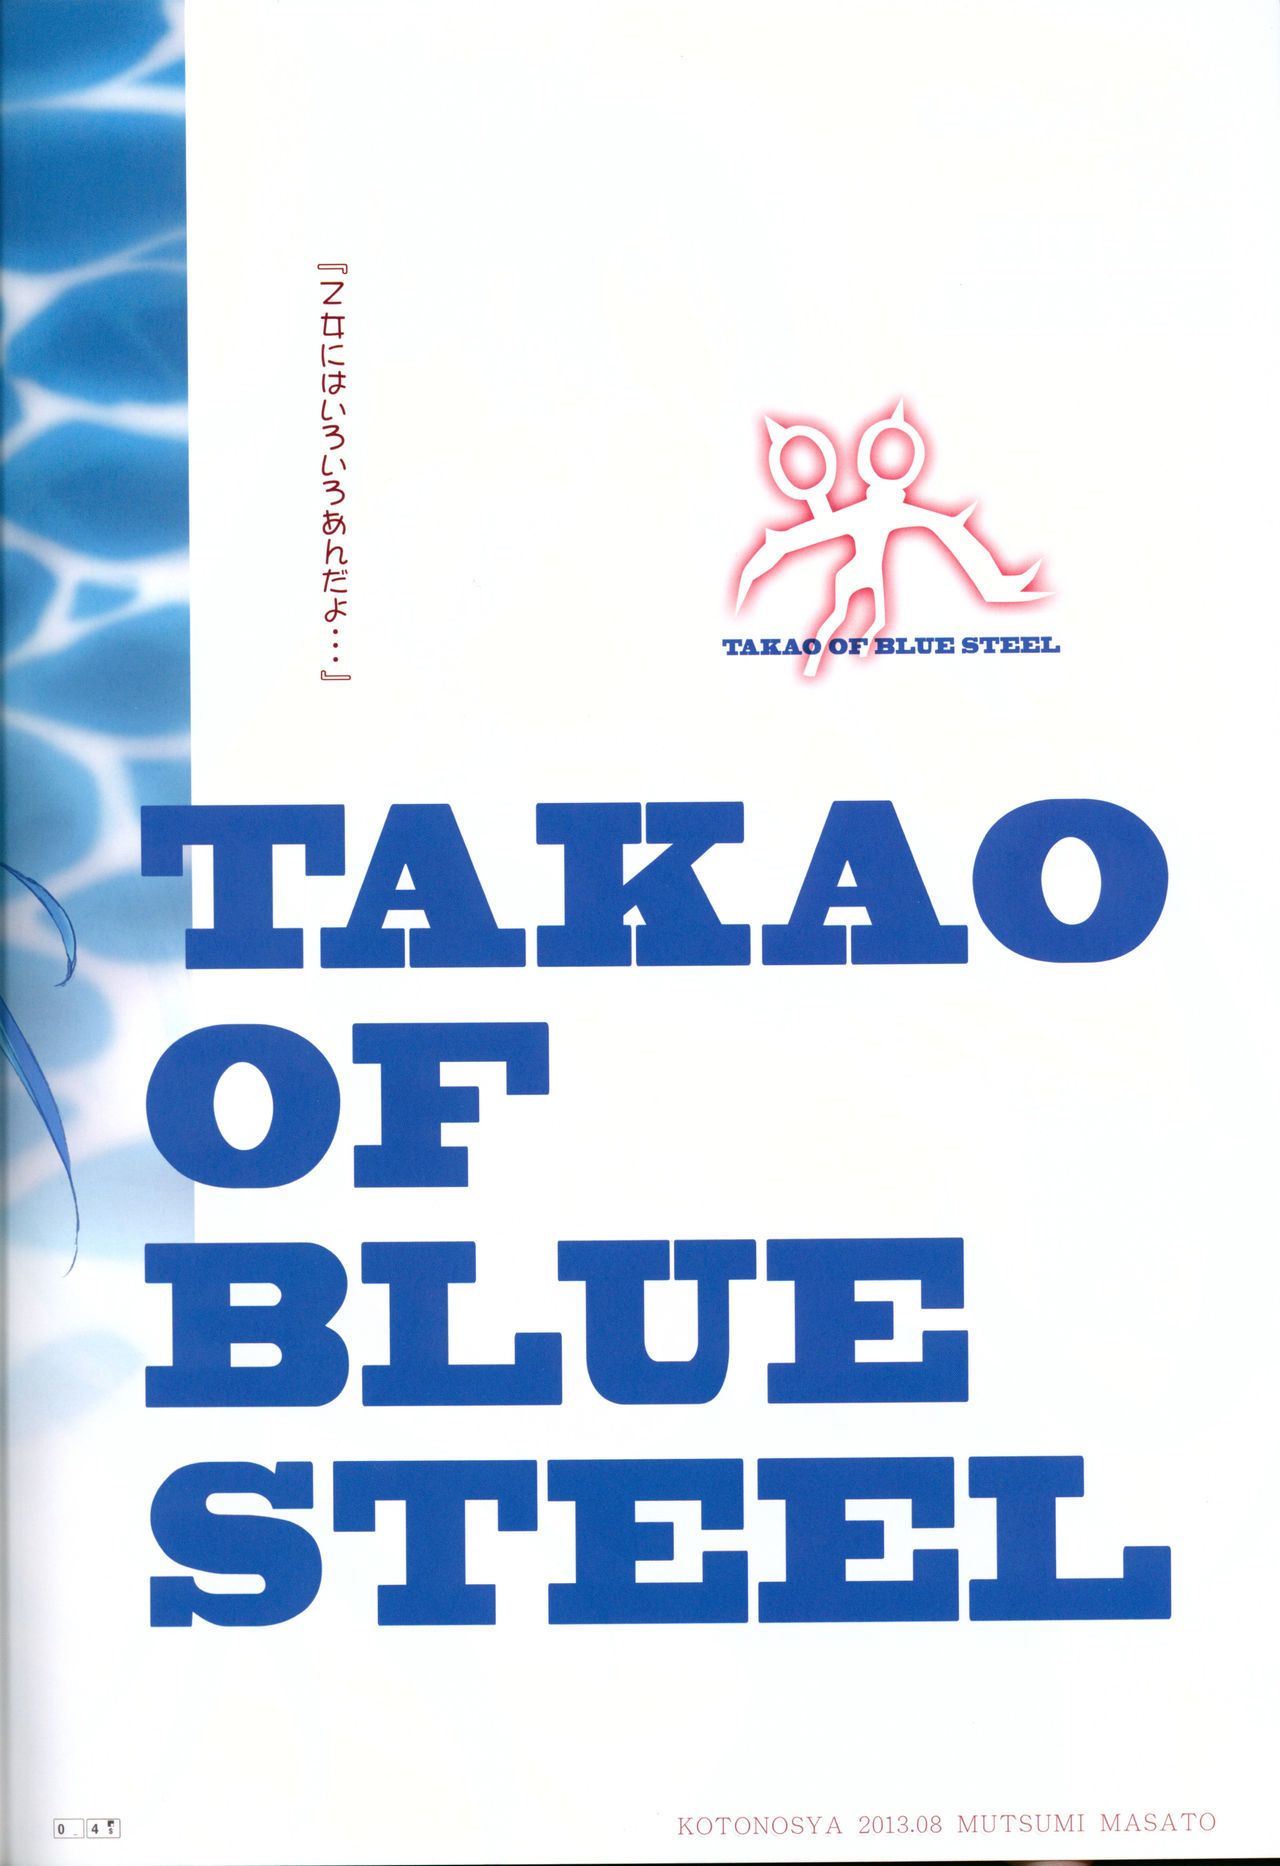 (c84) kotonosha (mutsumi masato) takao những màu xanh Thép (arpeggio những màu xanh steel) ehcove